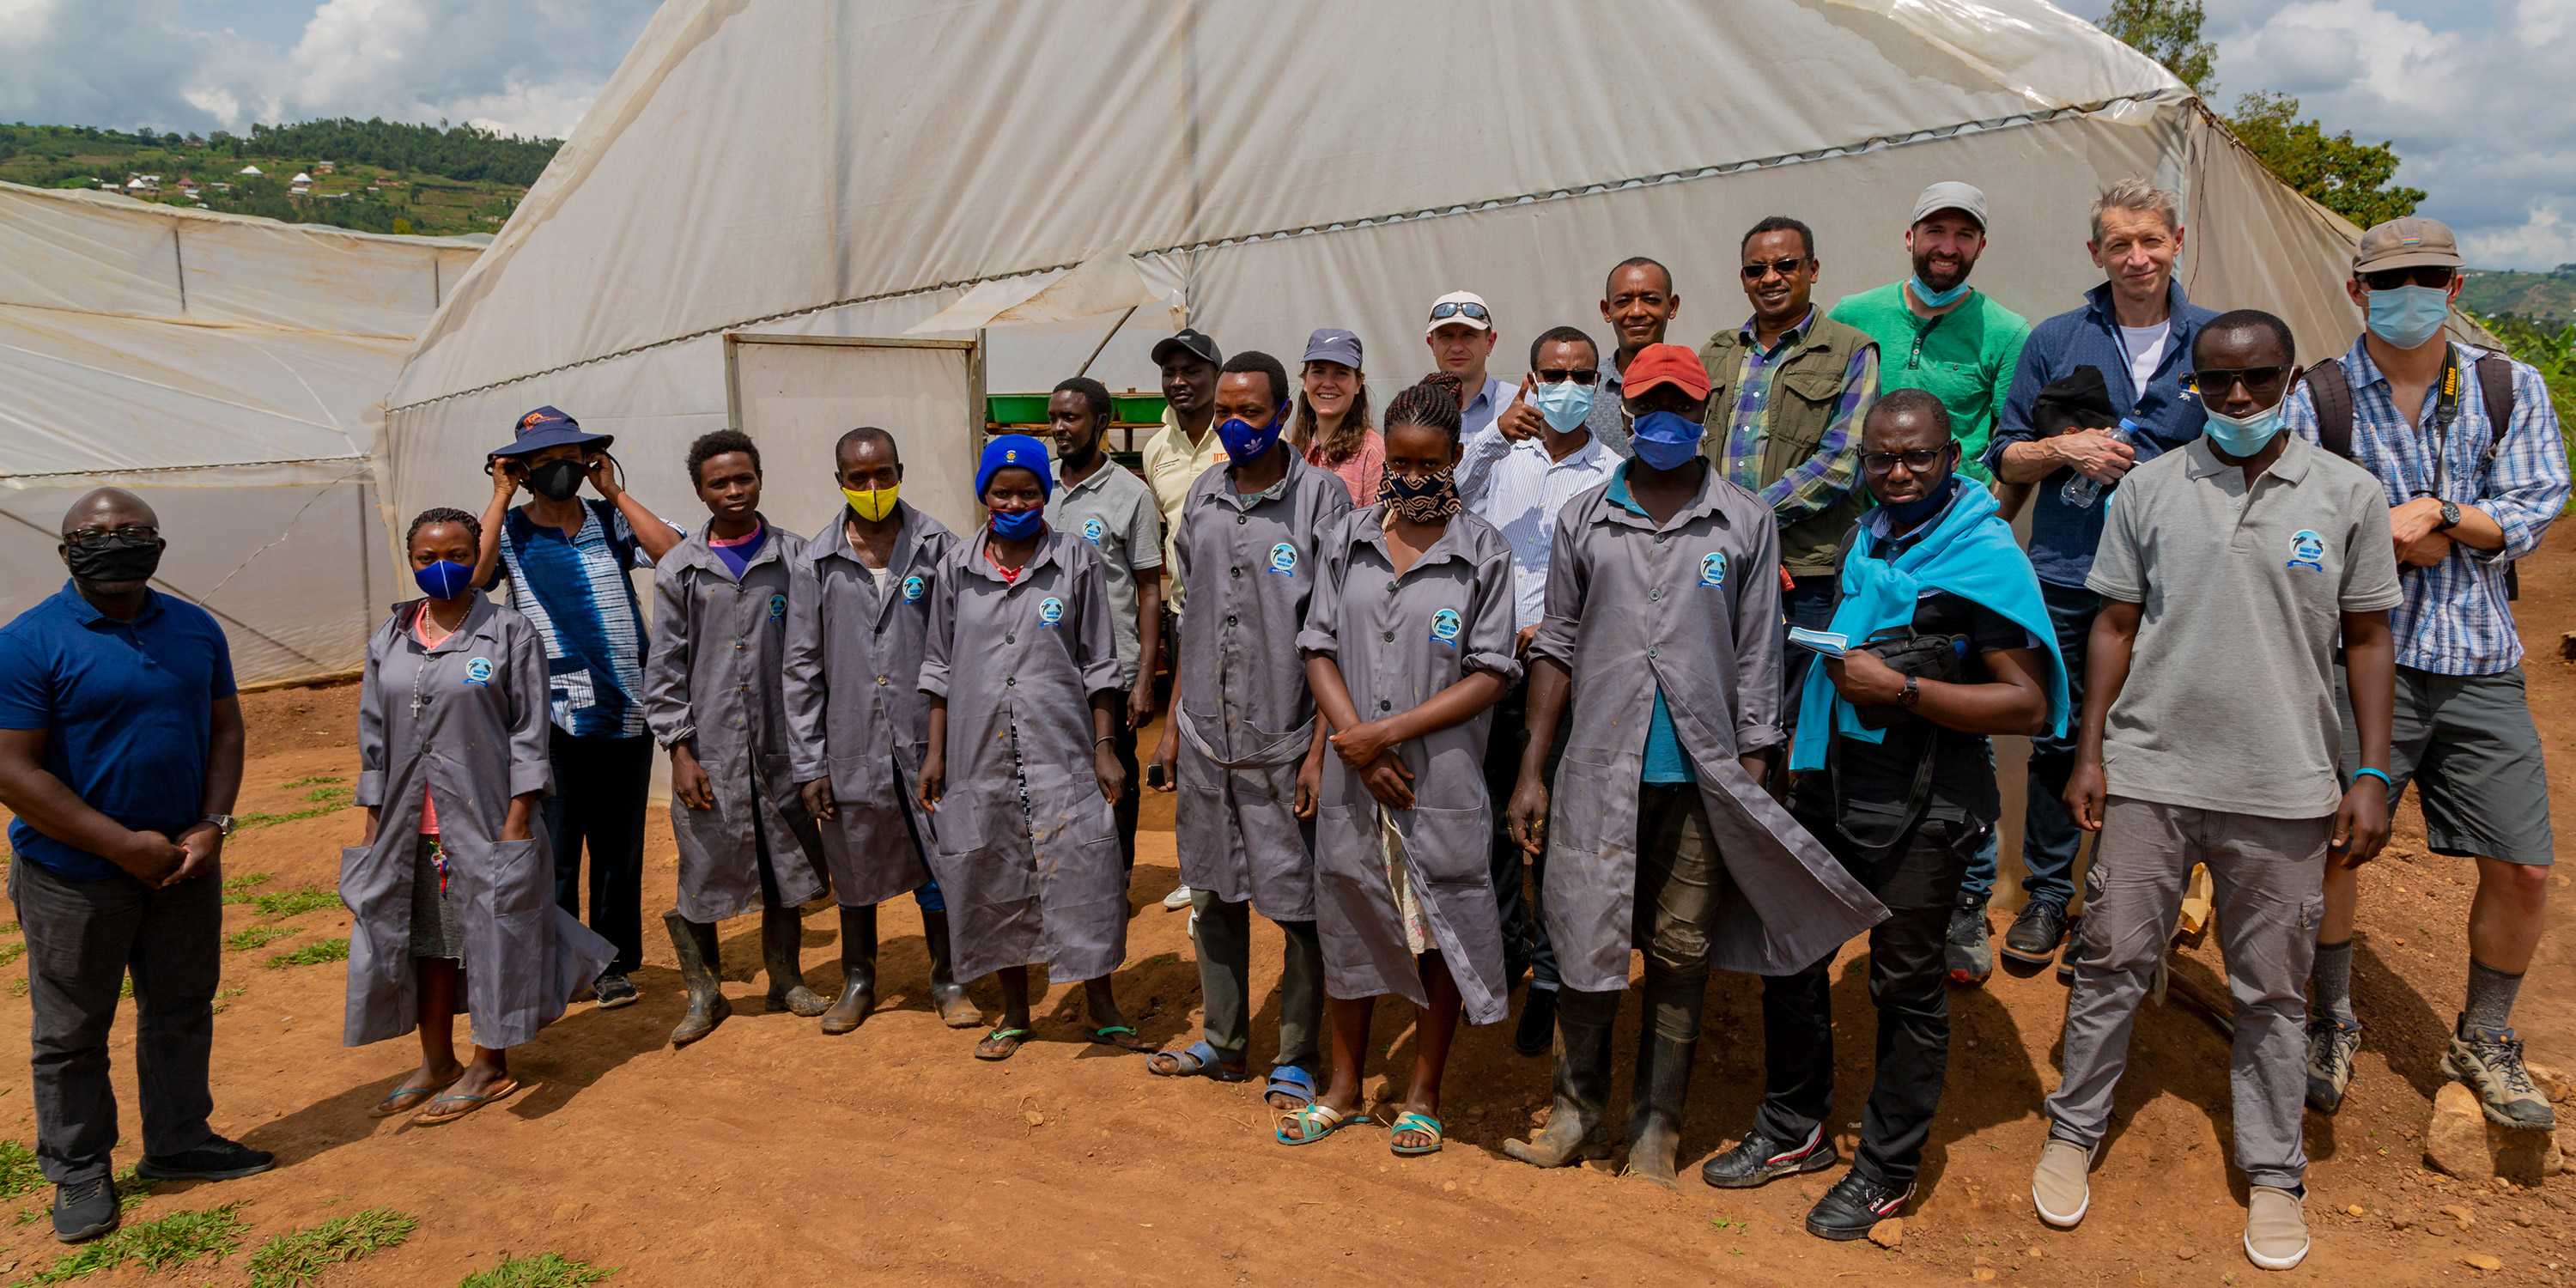 Gruppenfoto Runres-Team in Ruanda vor einem weissen Zelt